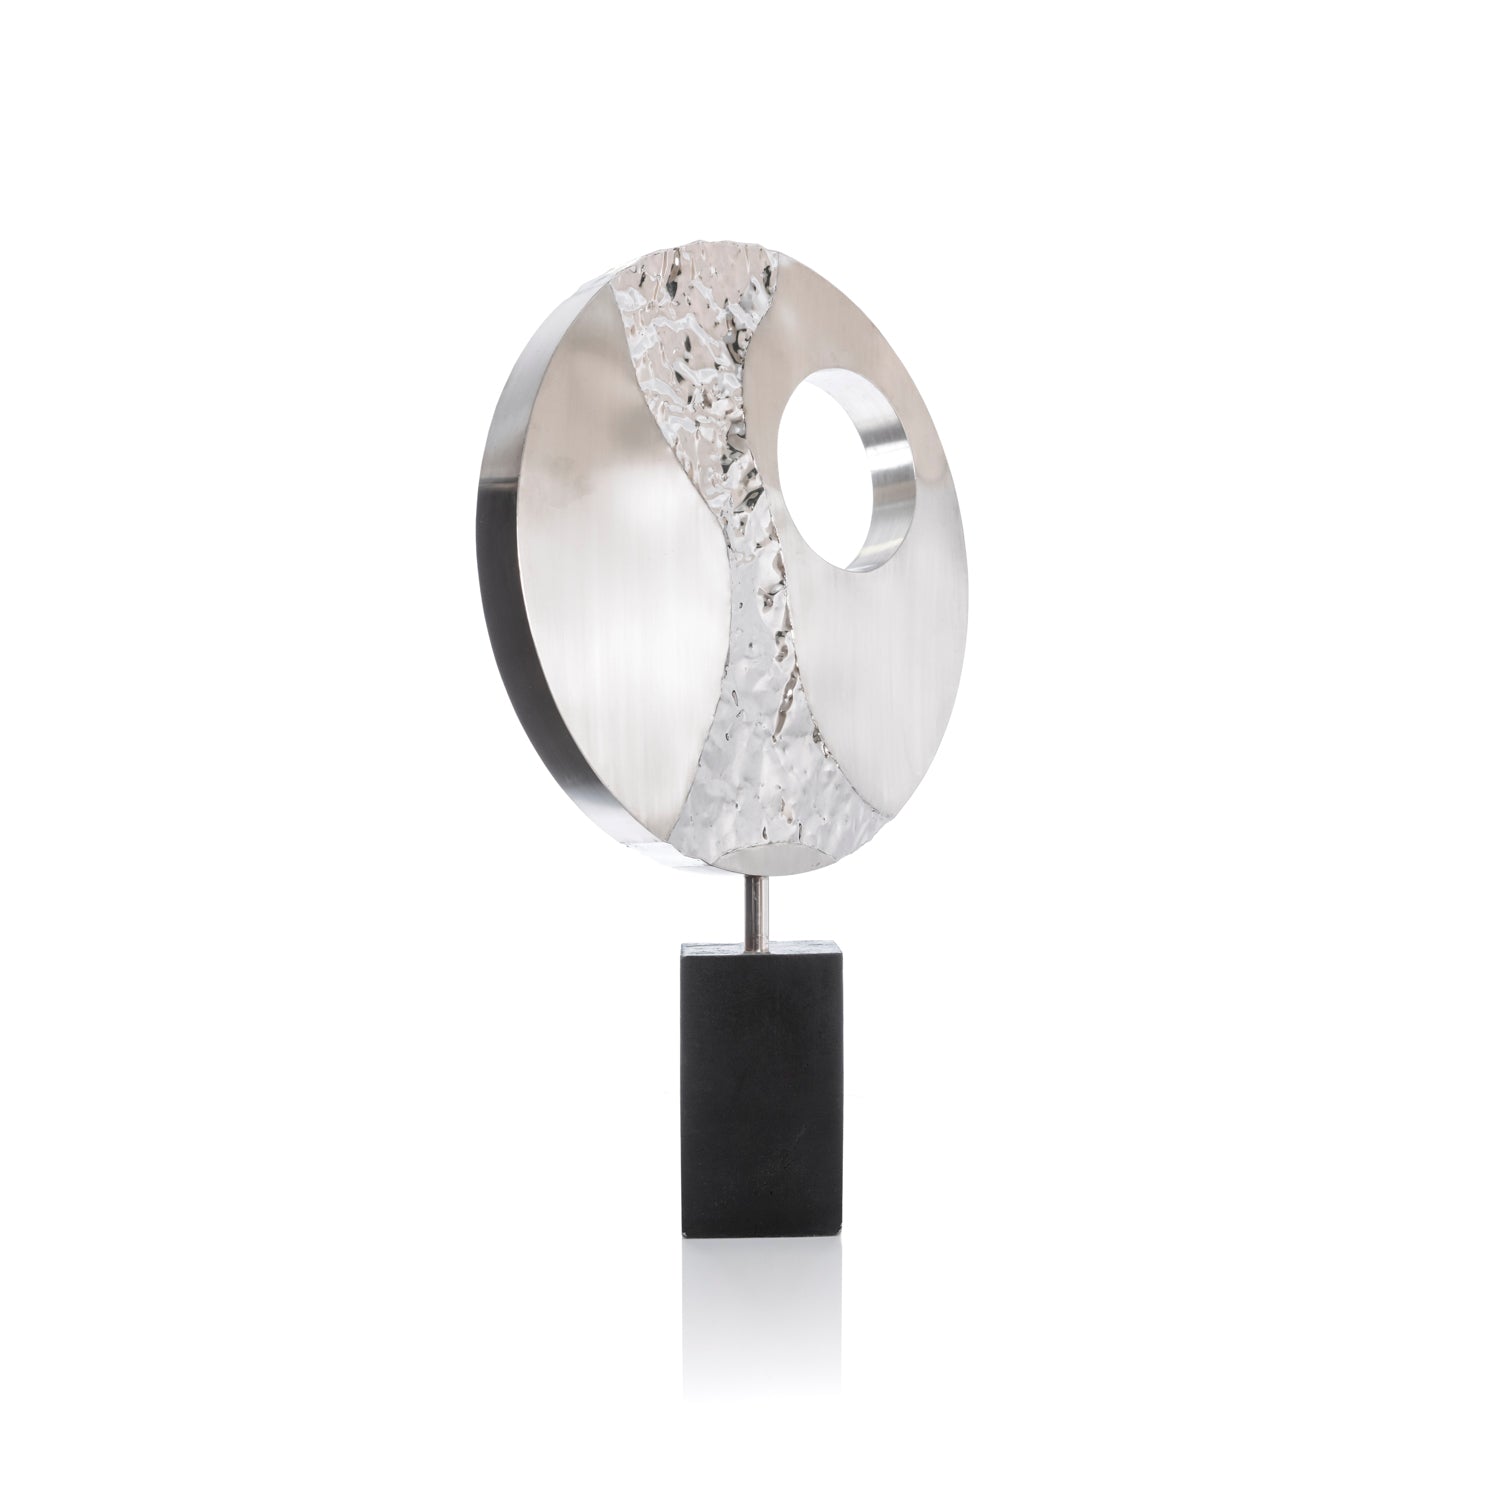 Struttura cerchio in acciaio con particolari decorativi – Asmat Design